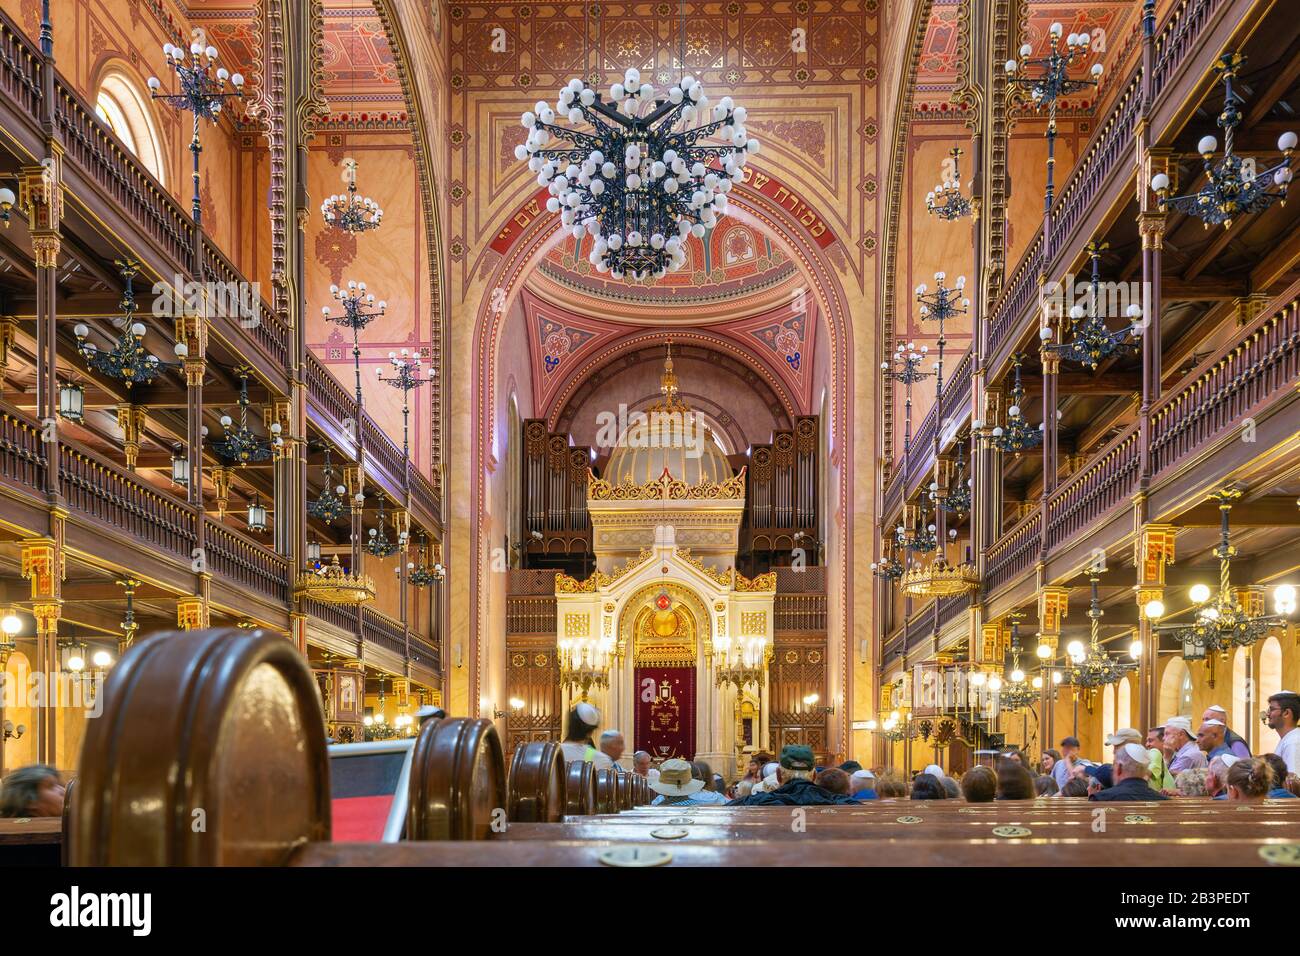 Inneneinrichtung der Großen Synagoge - Tabakgasse - in Budapest, Ungarn. Stockfoto